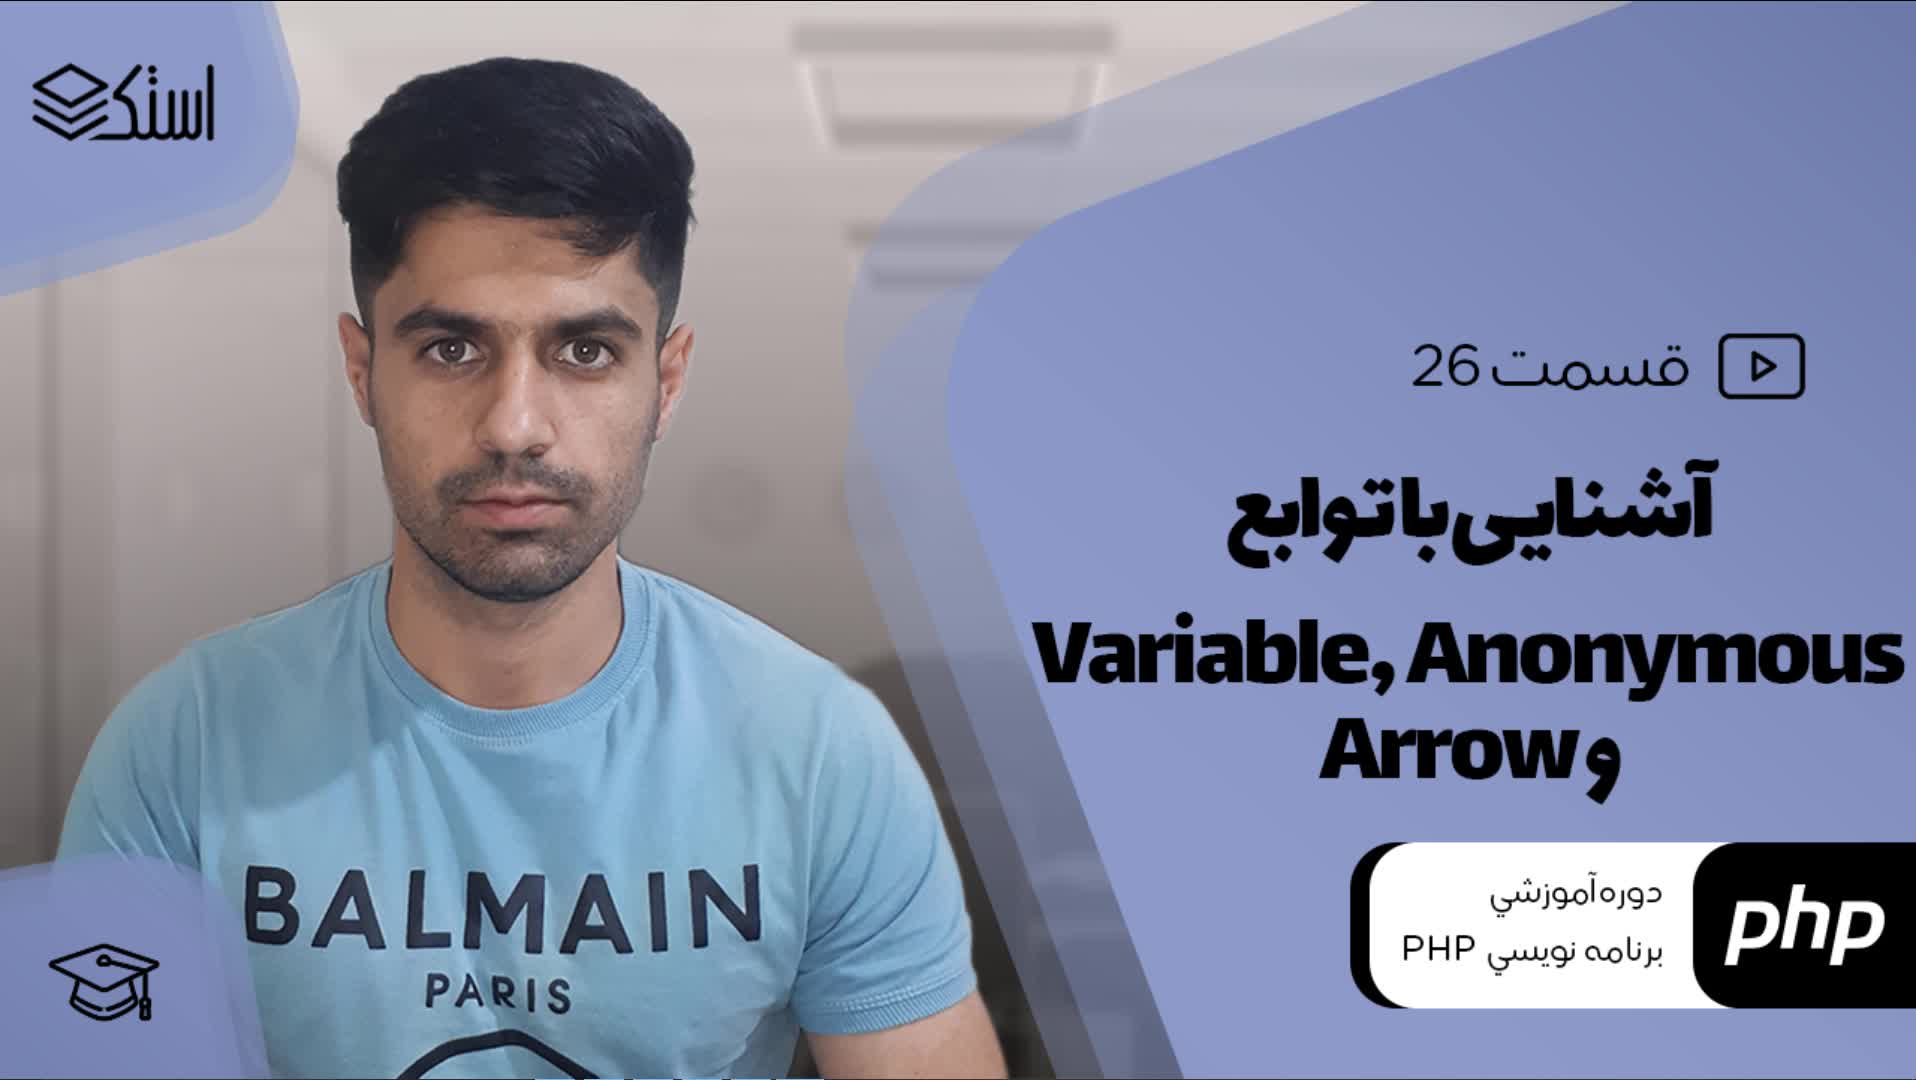 آموزش توابع Variable، Anonymous و Arrow در PHP (ویدیو + توضیحات) - قسمت 26 - استک لرن